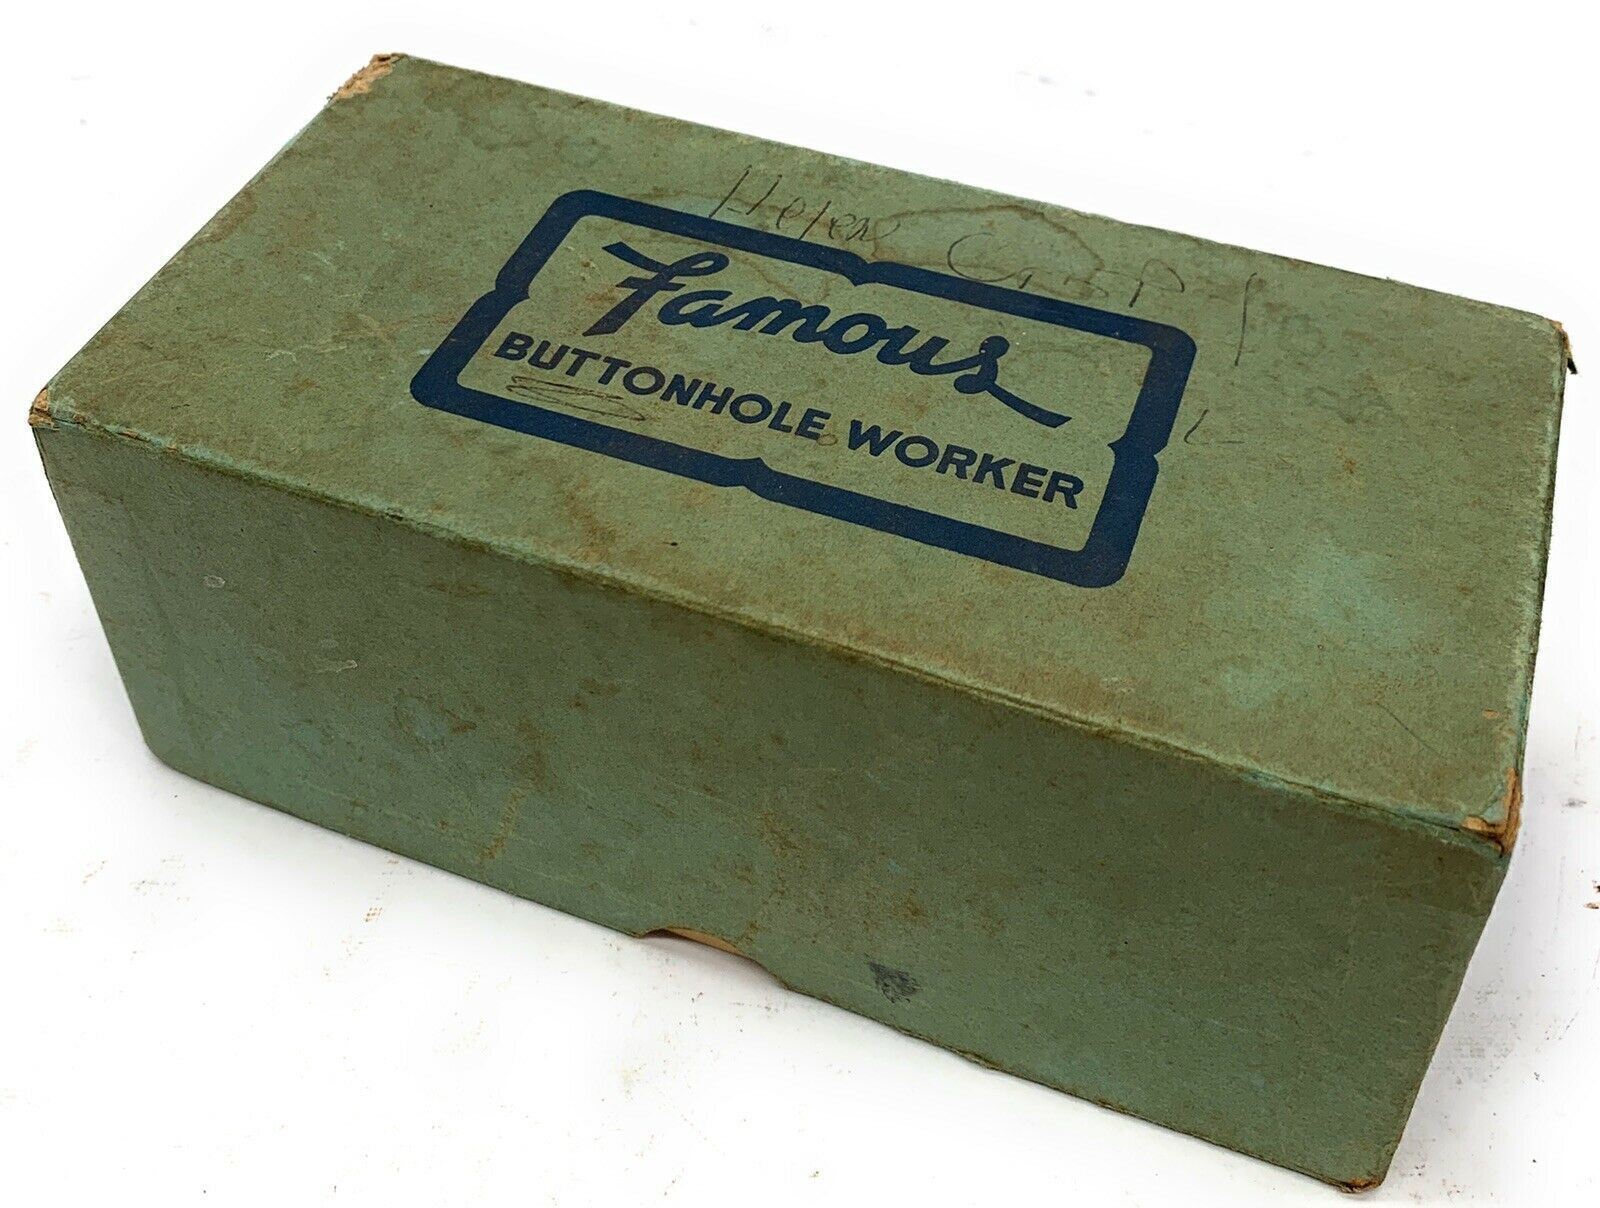 Vintage Famous Buttonhole Worker  Model CC w/ Box